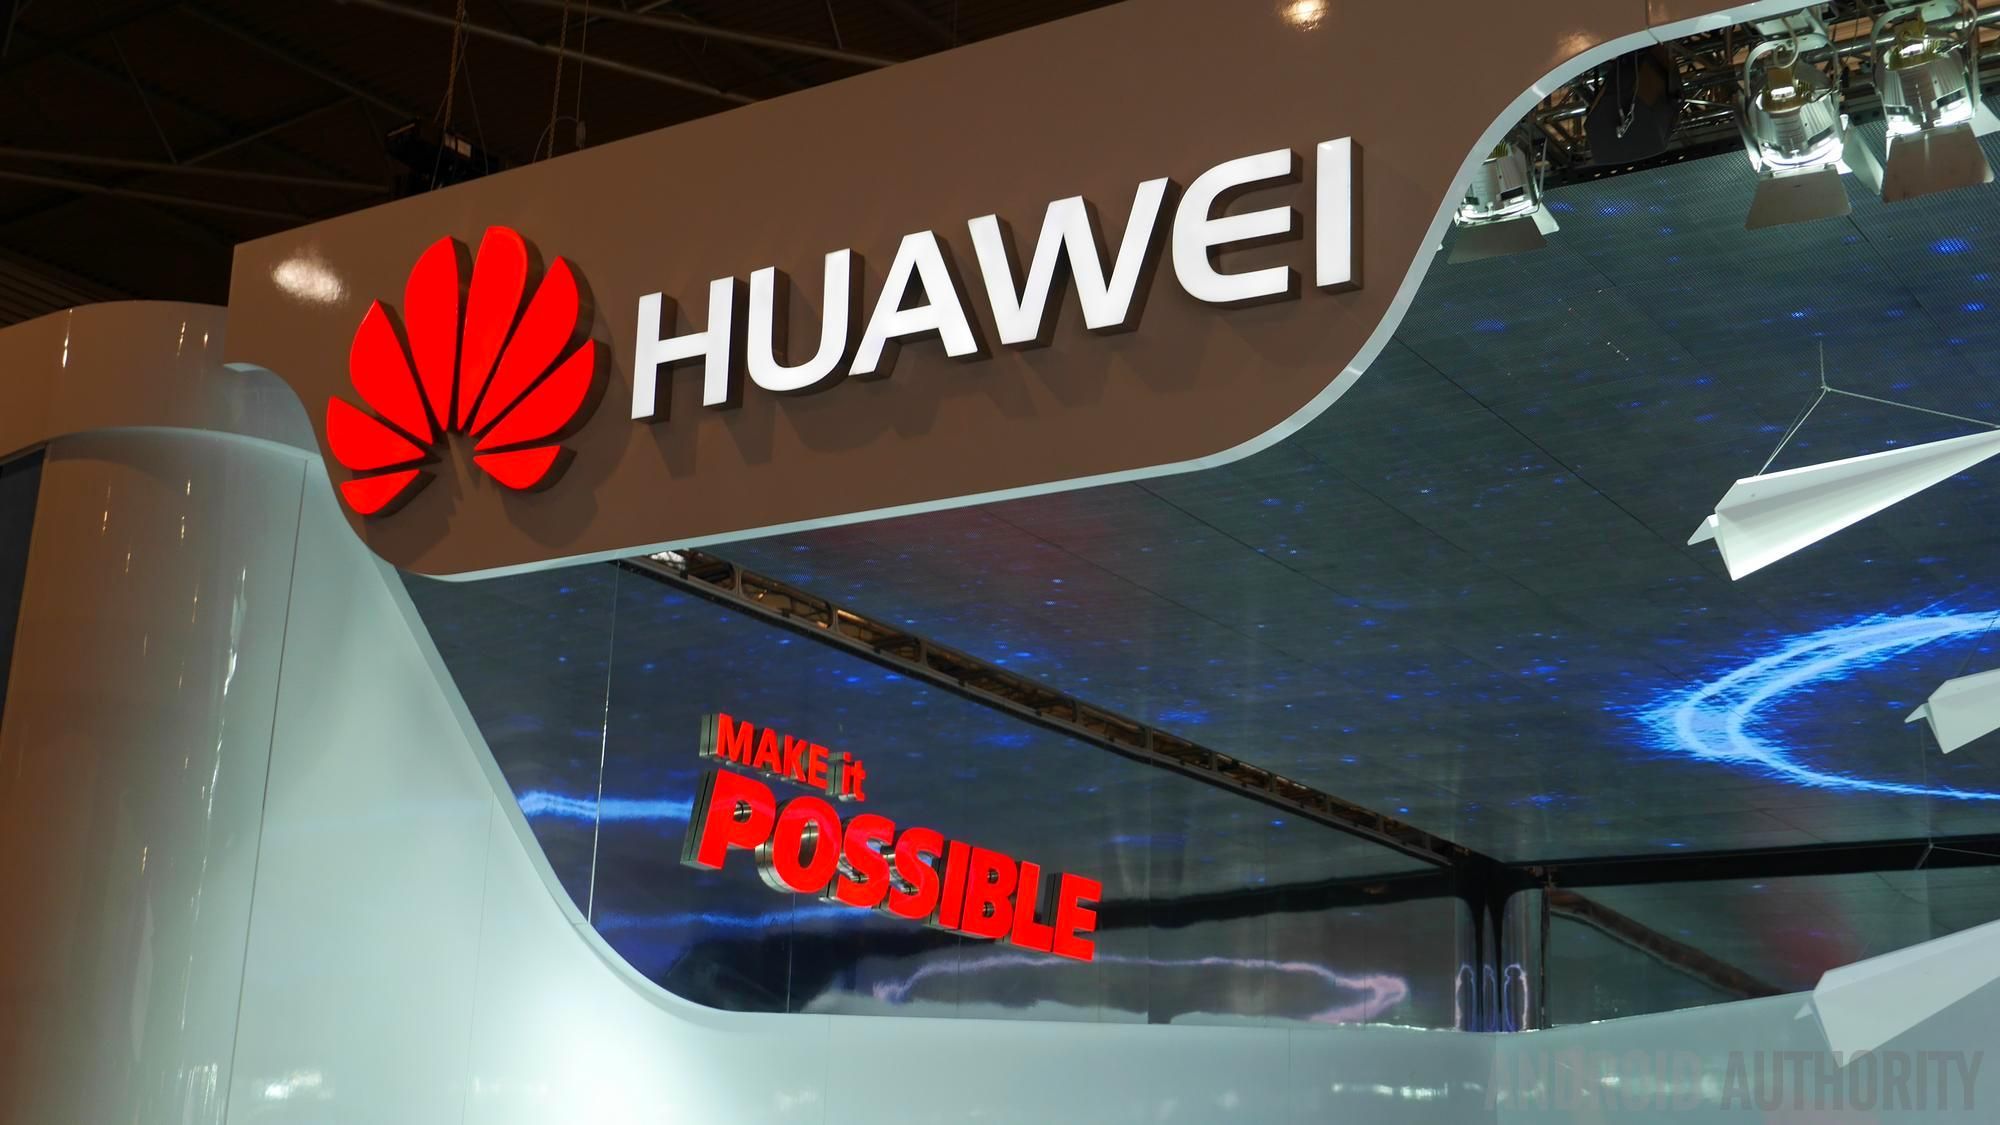 นิวซีแลนด์ไม่อนุญาตให้มีการใช้อุปกรณ์ 5G ของ Huawei ตามรอยออสเตรเลียไปอีกราย